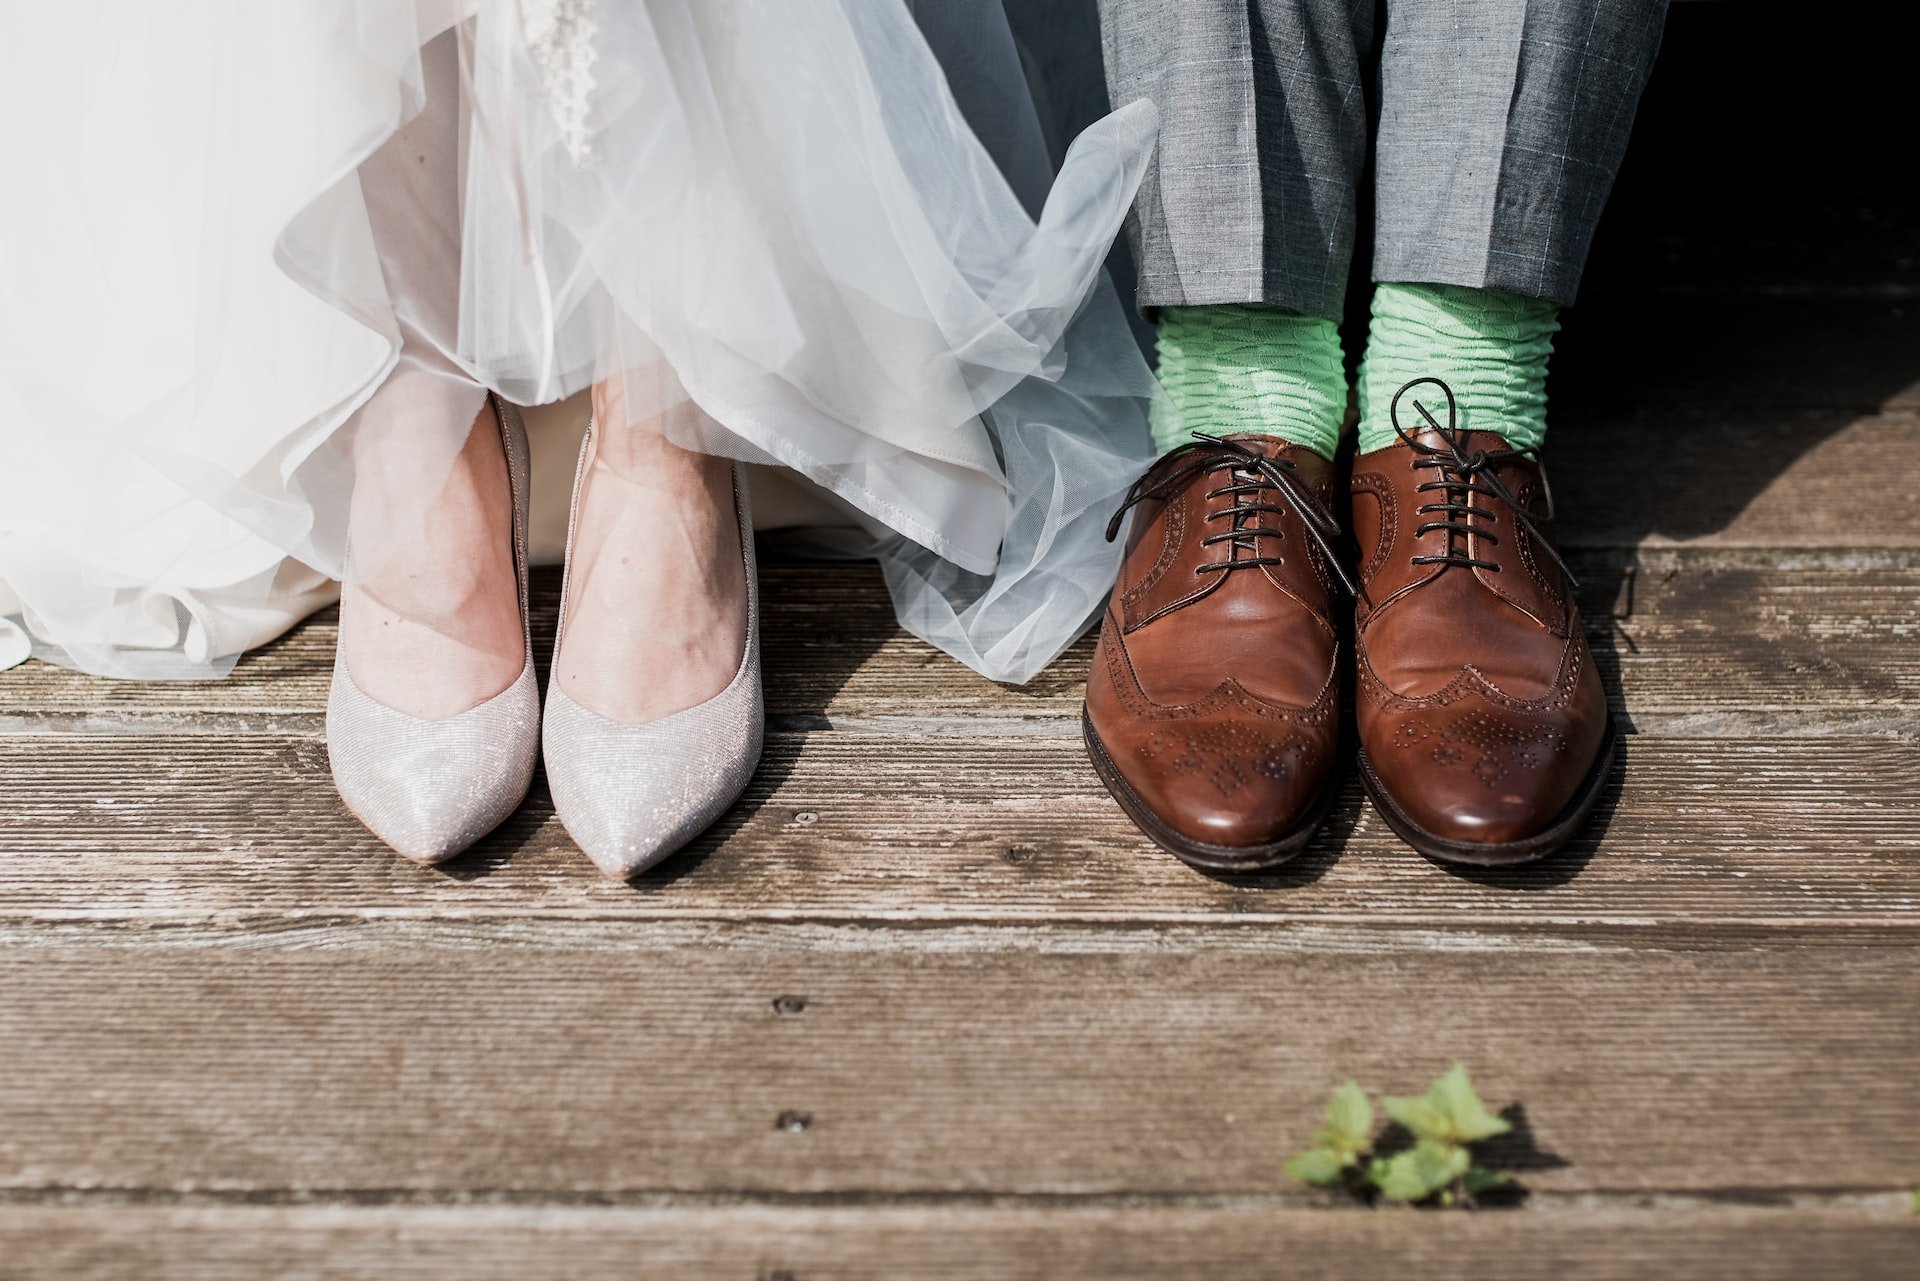 marc-a-sporys-NO8Sj4dKE8k-unsplash-bride-groom-shoes.jpeg